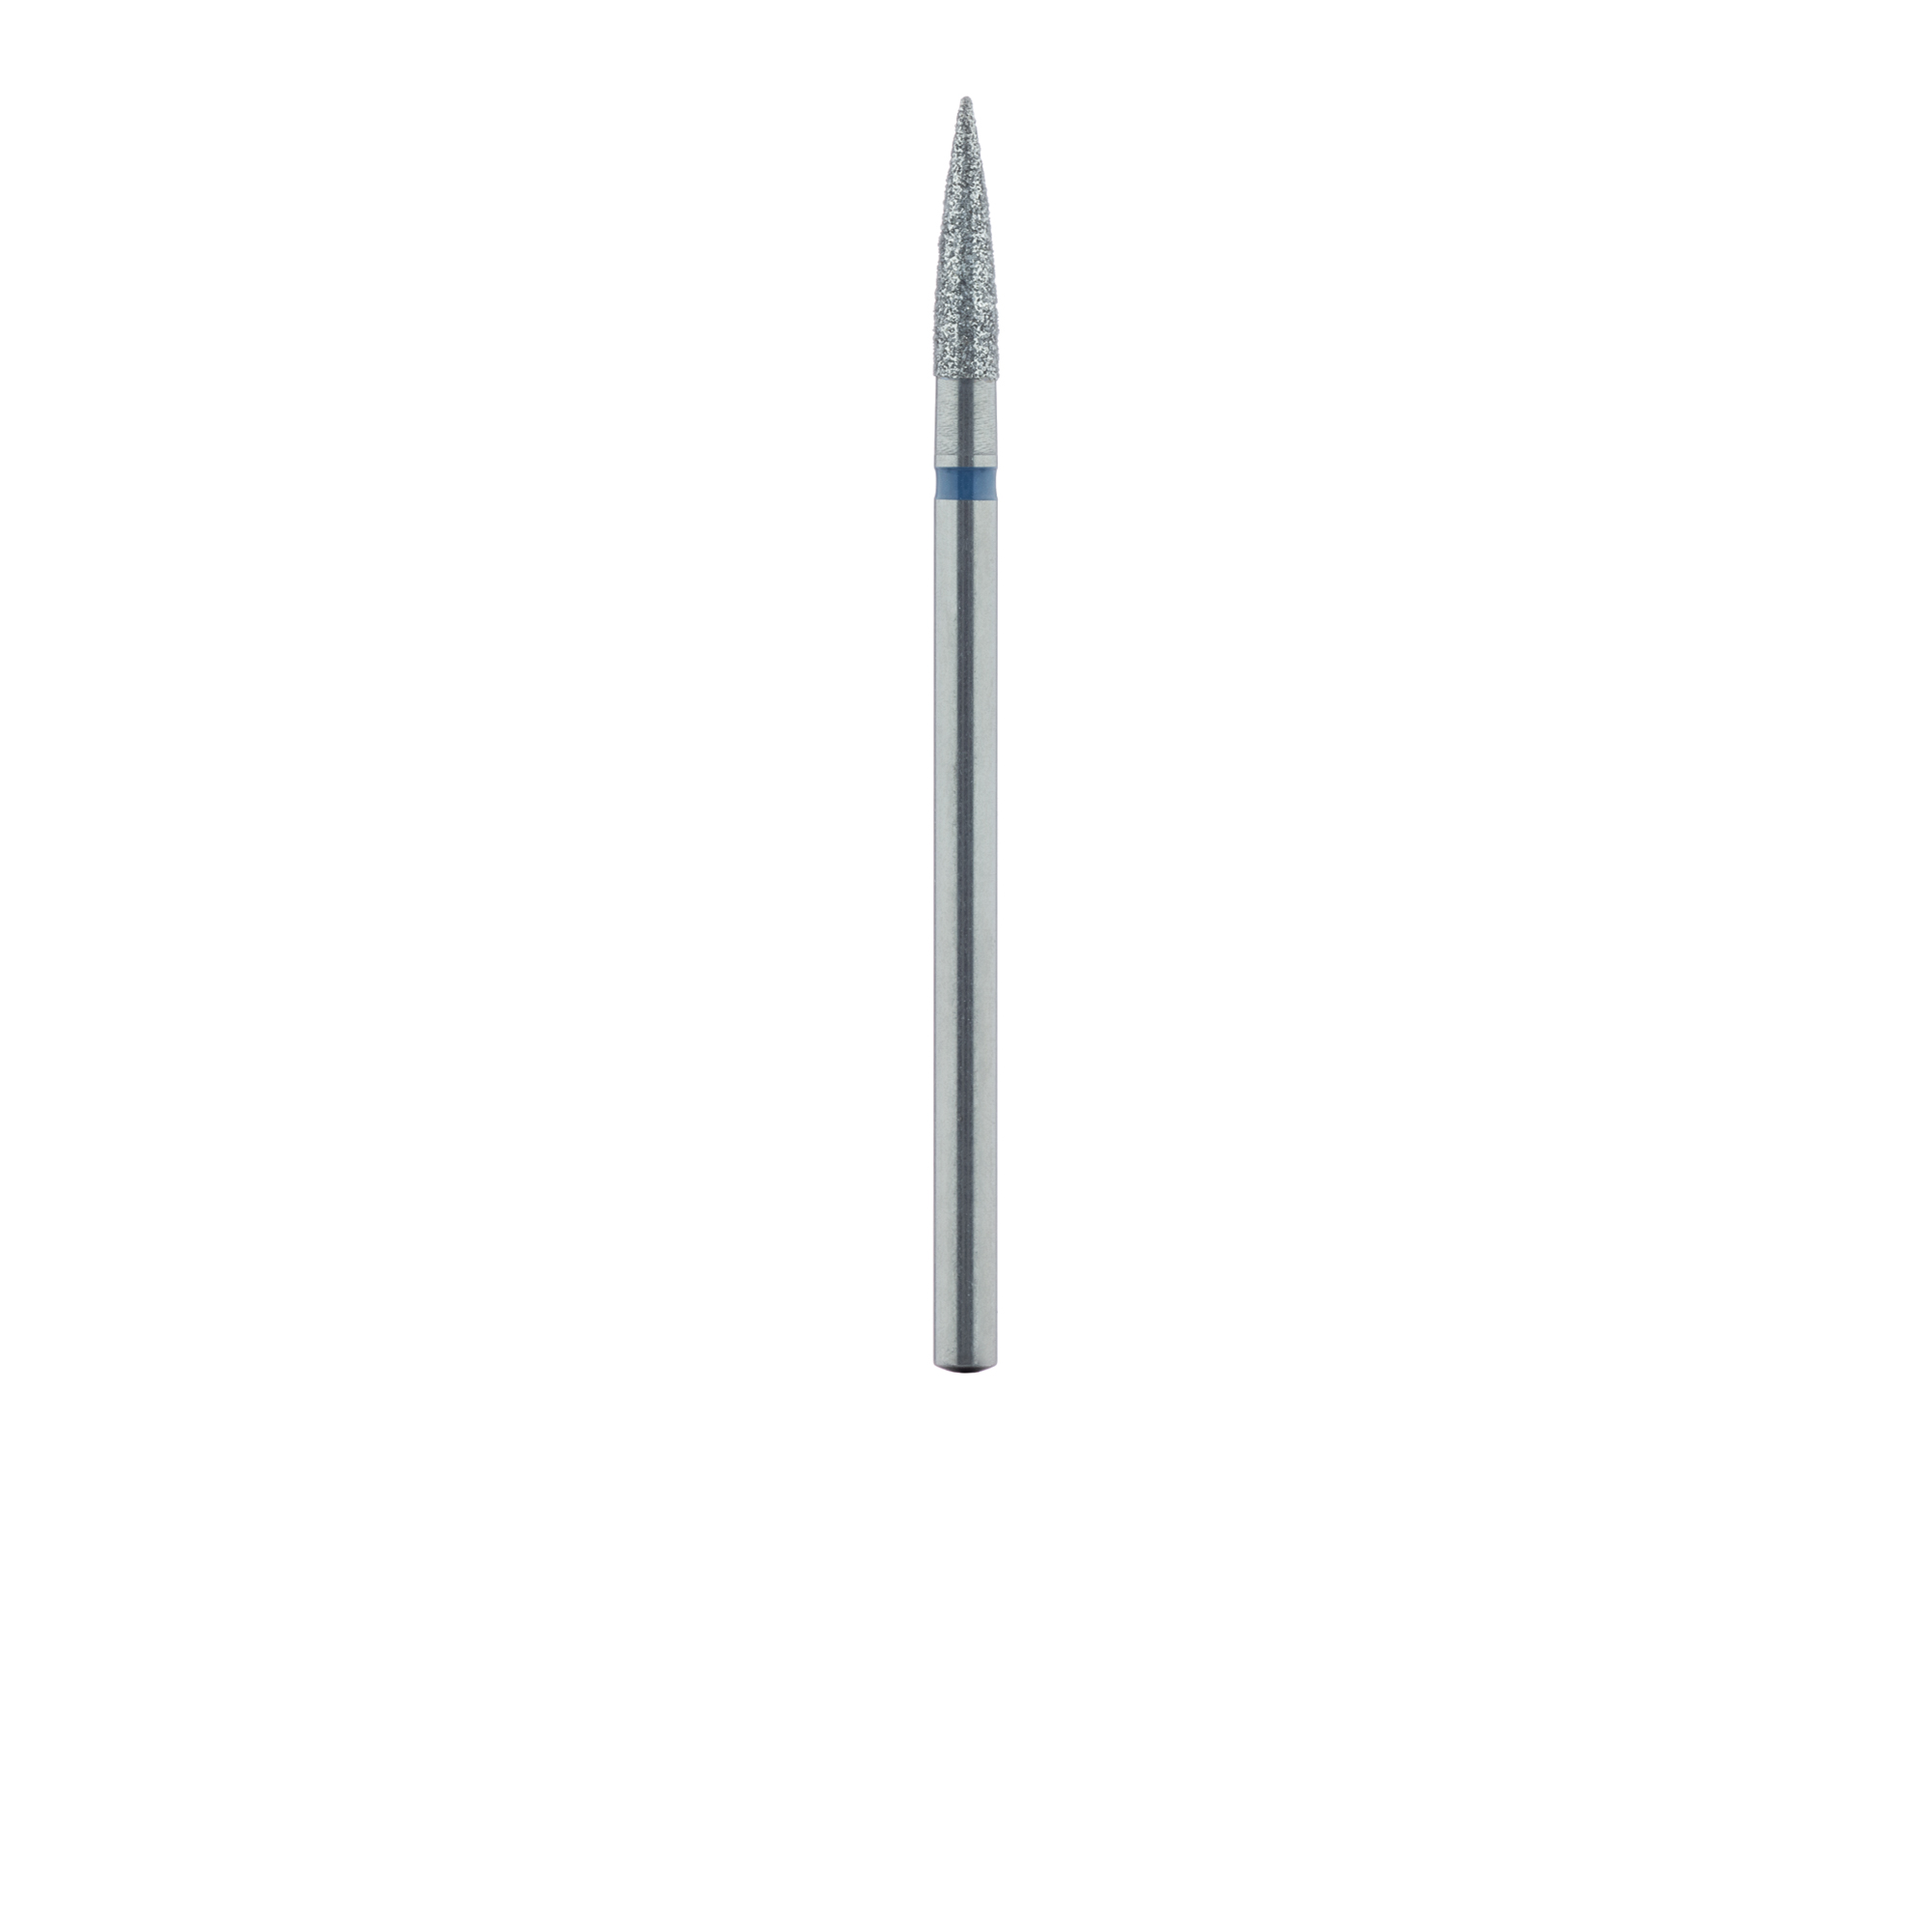 863-025-HP Long Flame Diamond Bur, 2.5mm Ø, Medium, HP